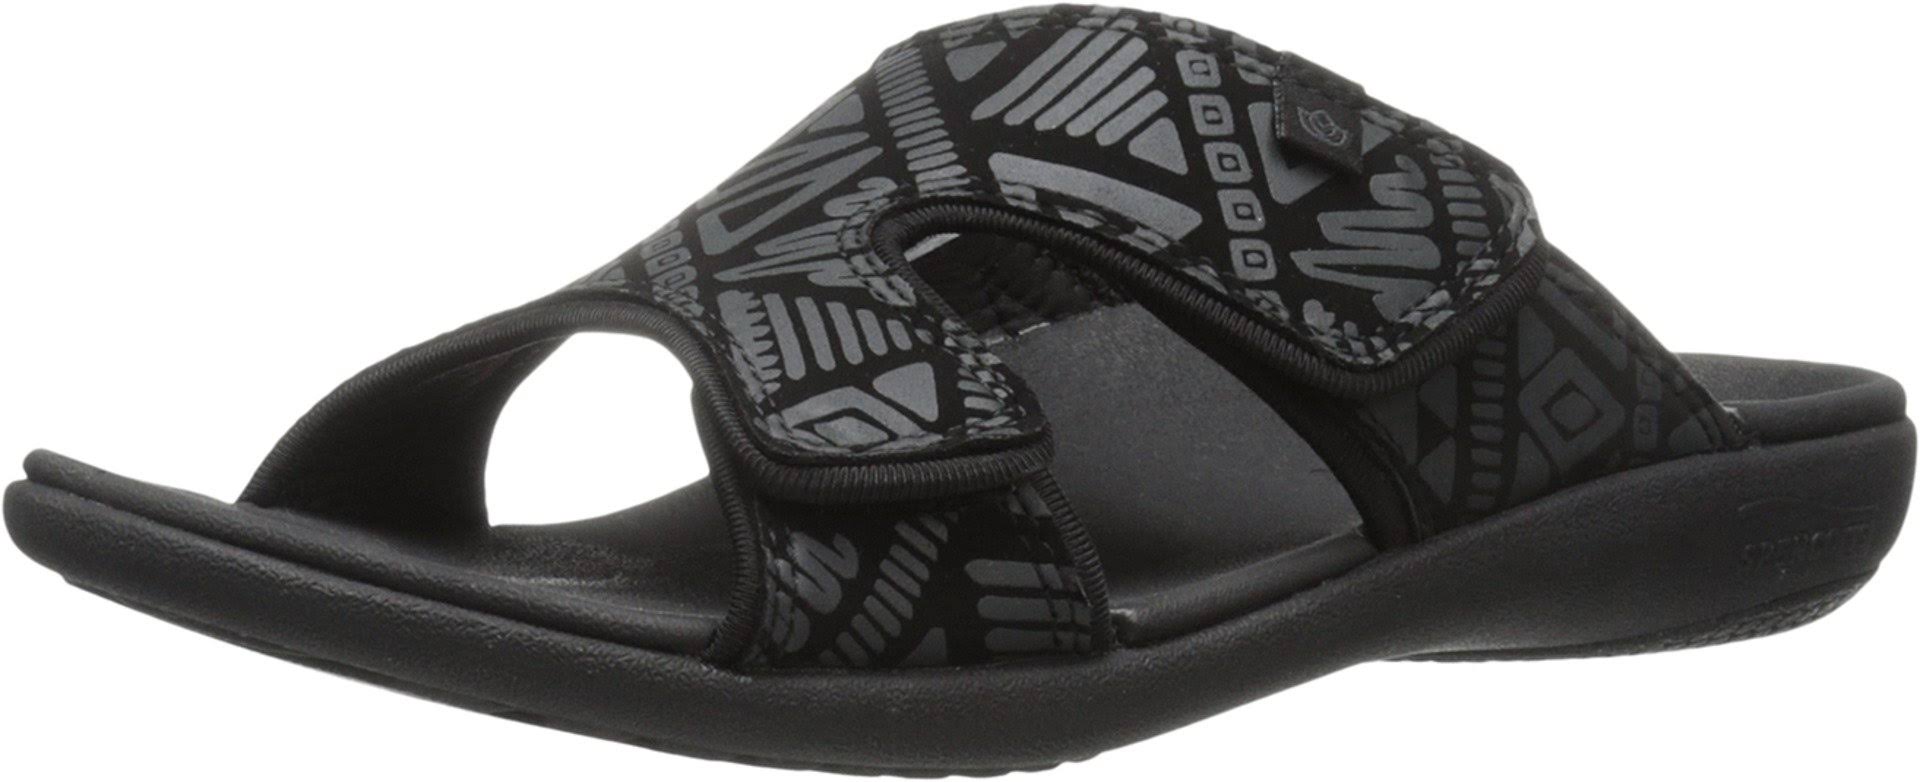 Spenco Women's Kholo Tribal Slide Sandals - Black, USW10